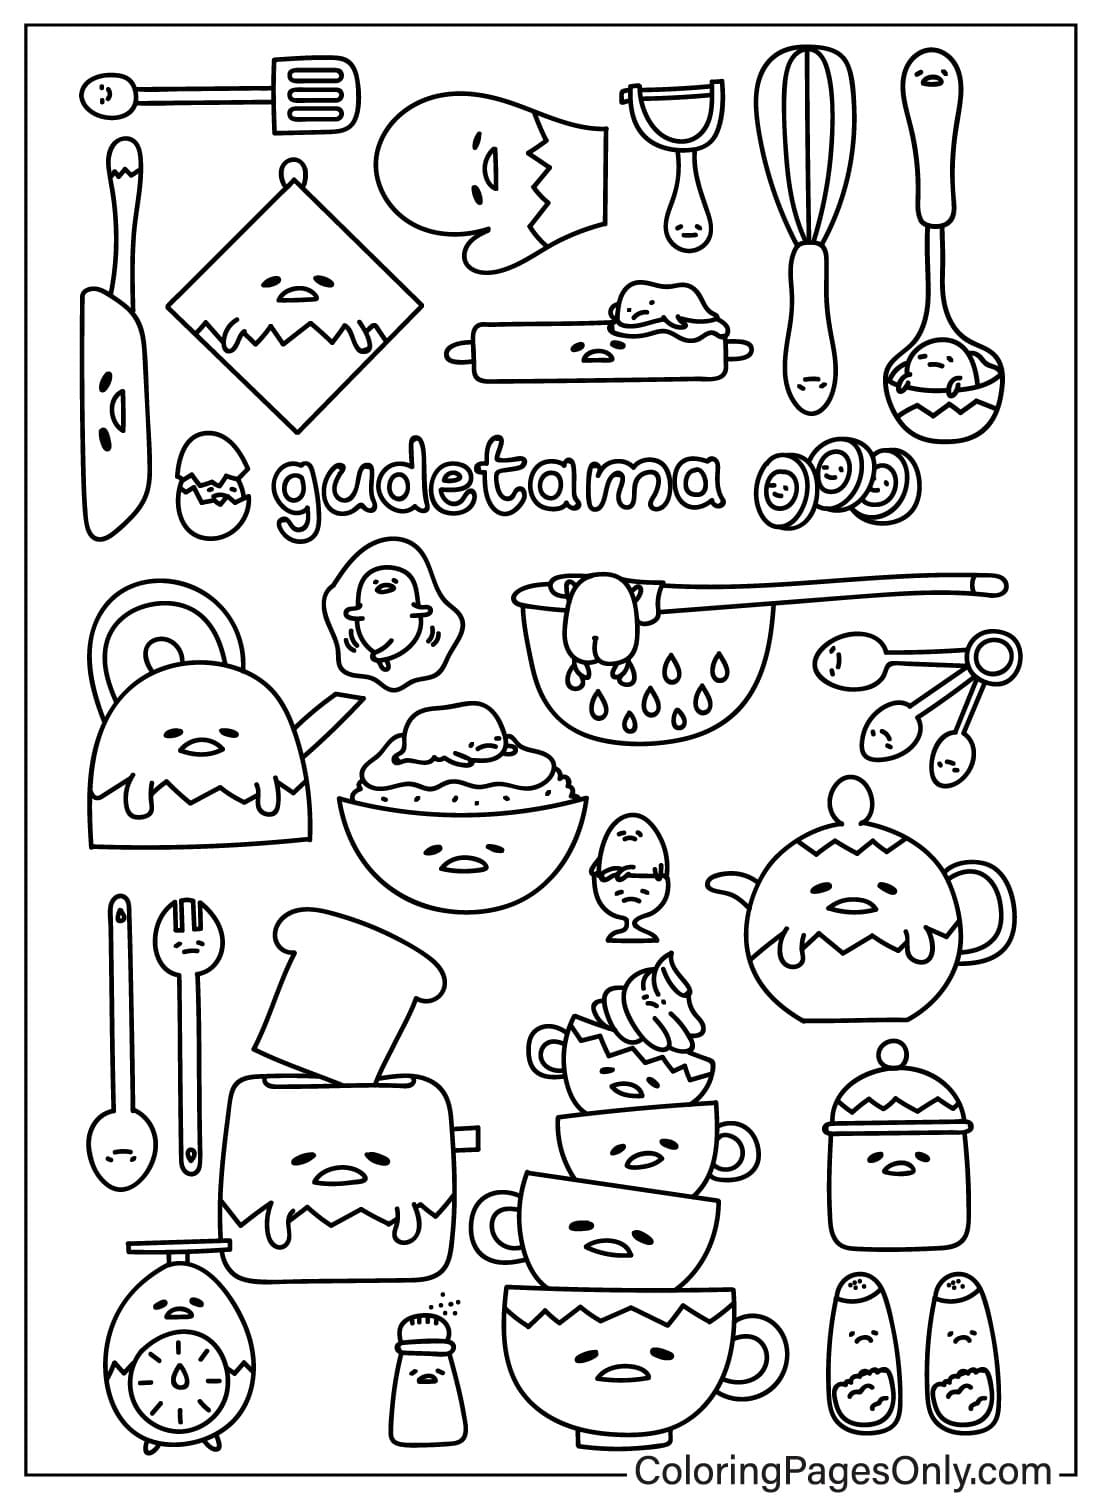 Páginas para colorir de Gudetama para impressão em Gudetama